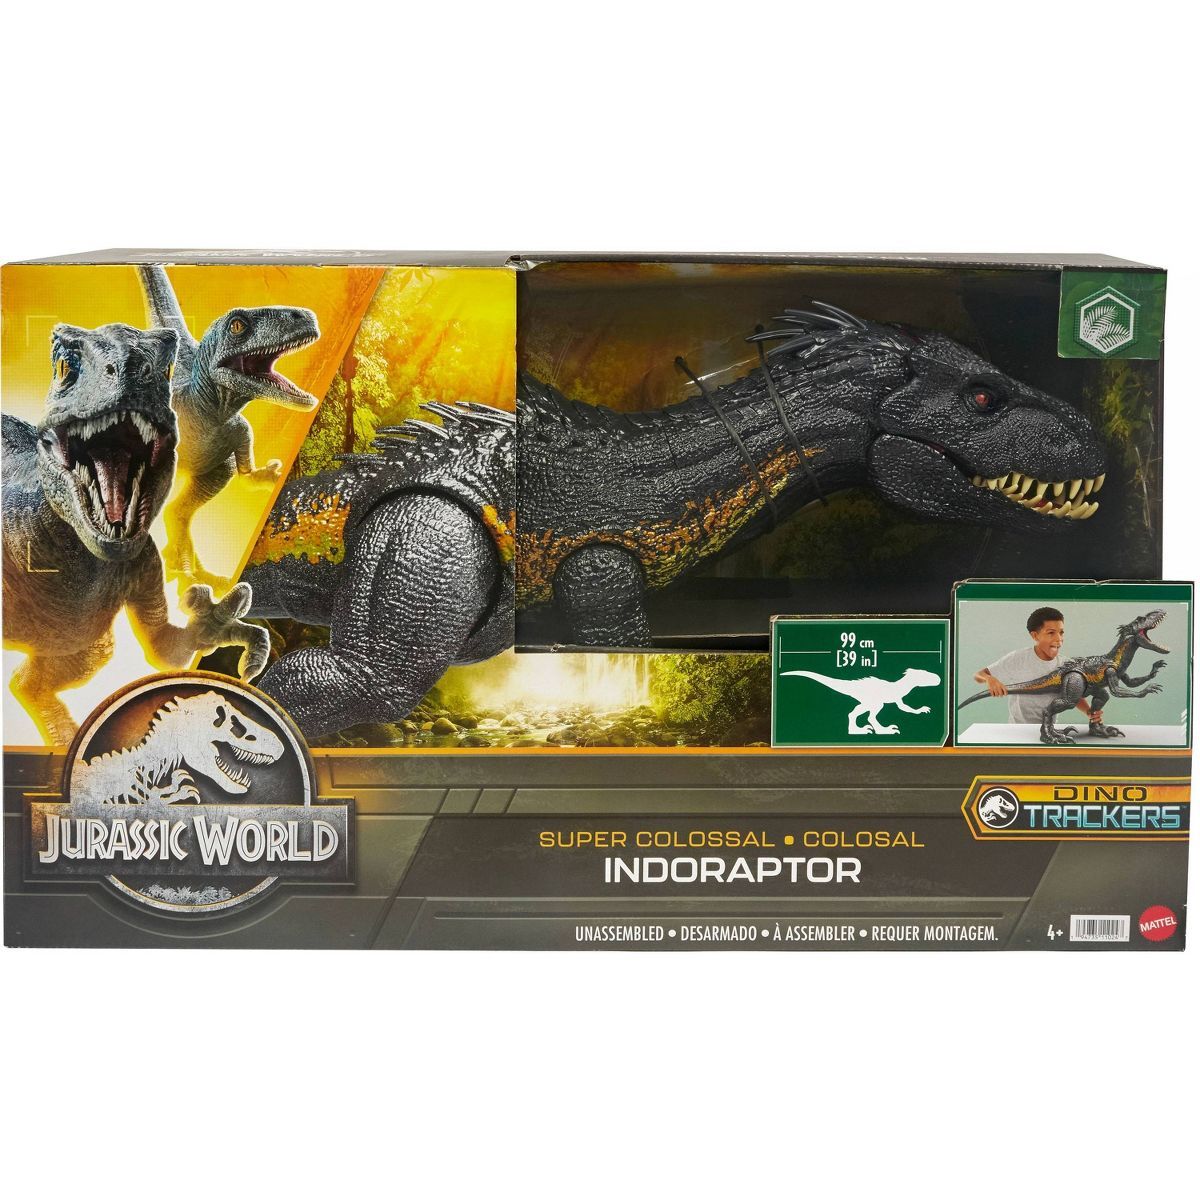 Jurassic World Super Colossal Indoraptor Action Figure | Target